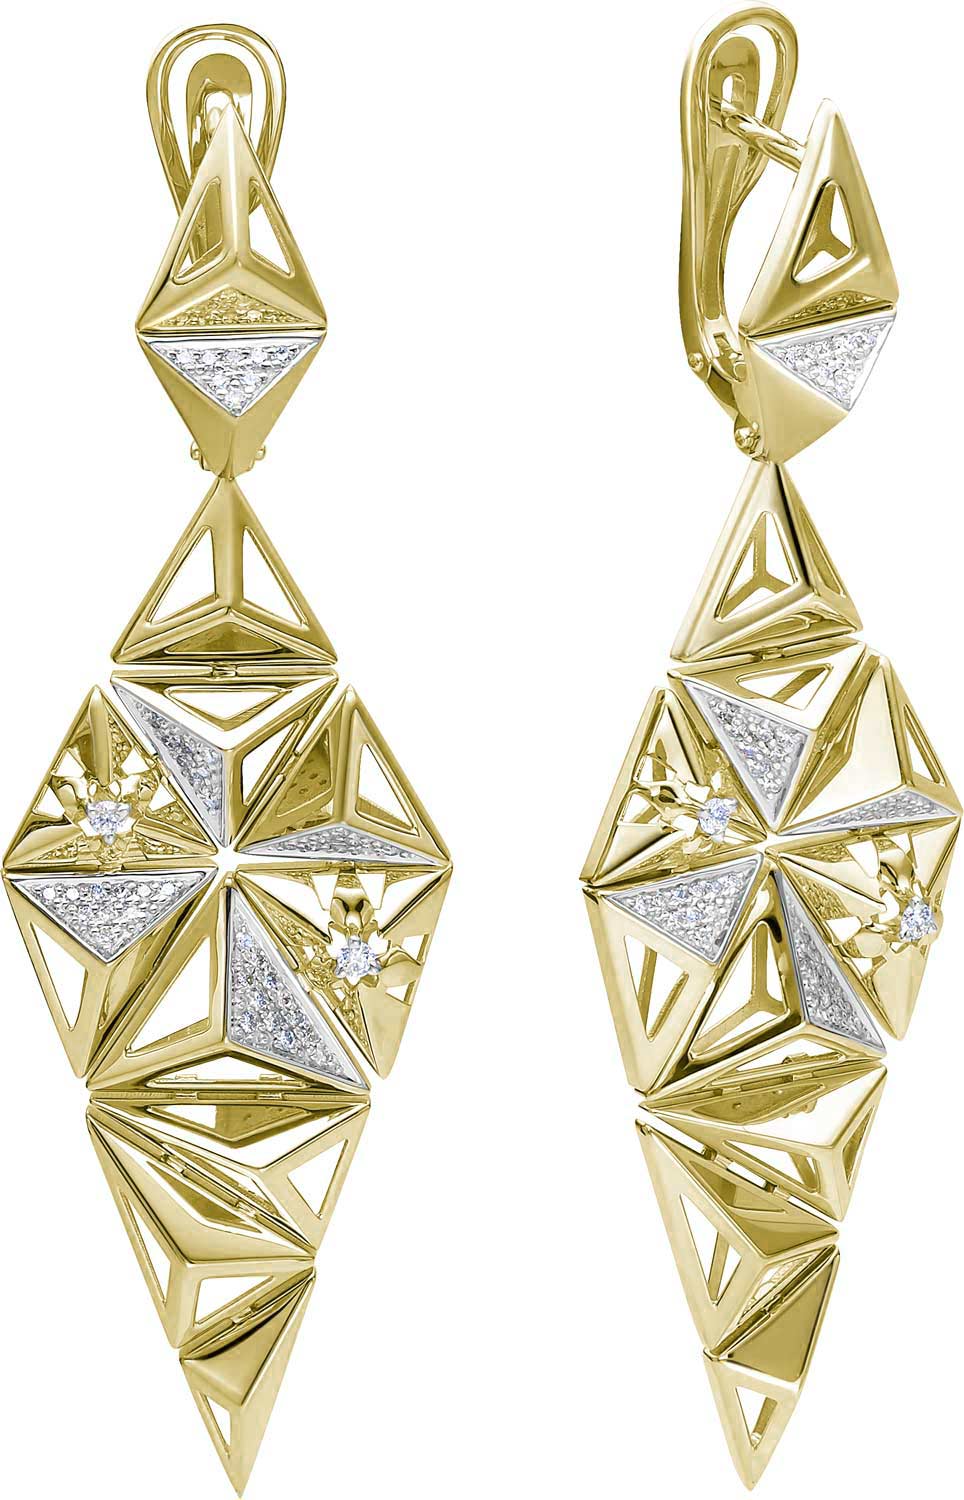     '''' Vesna jewelry 22422-351-00-00  